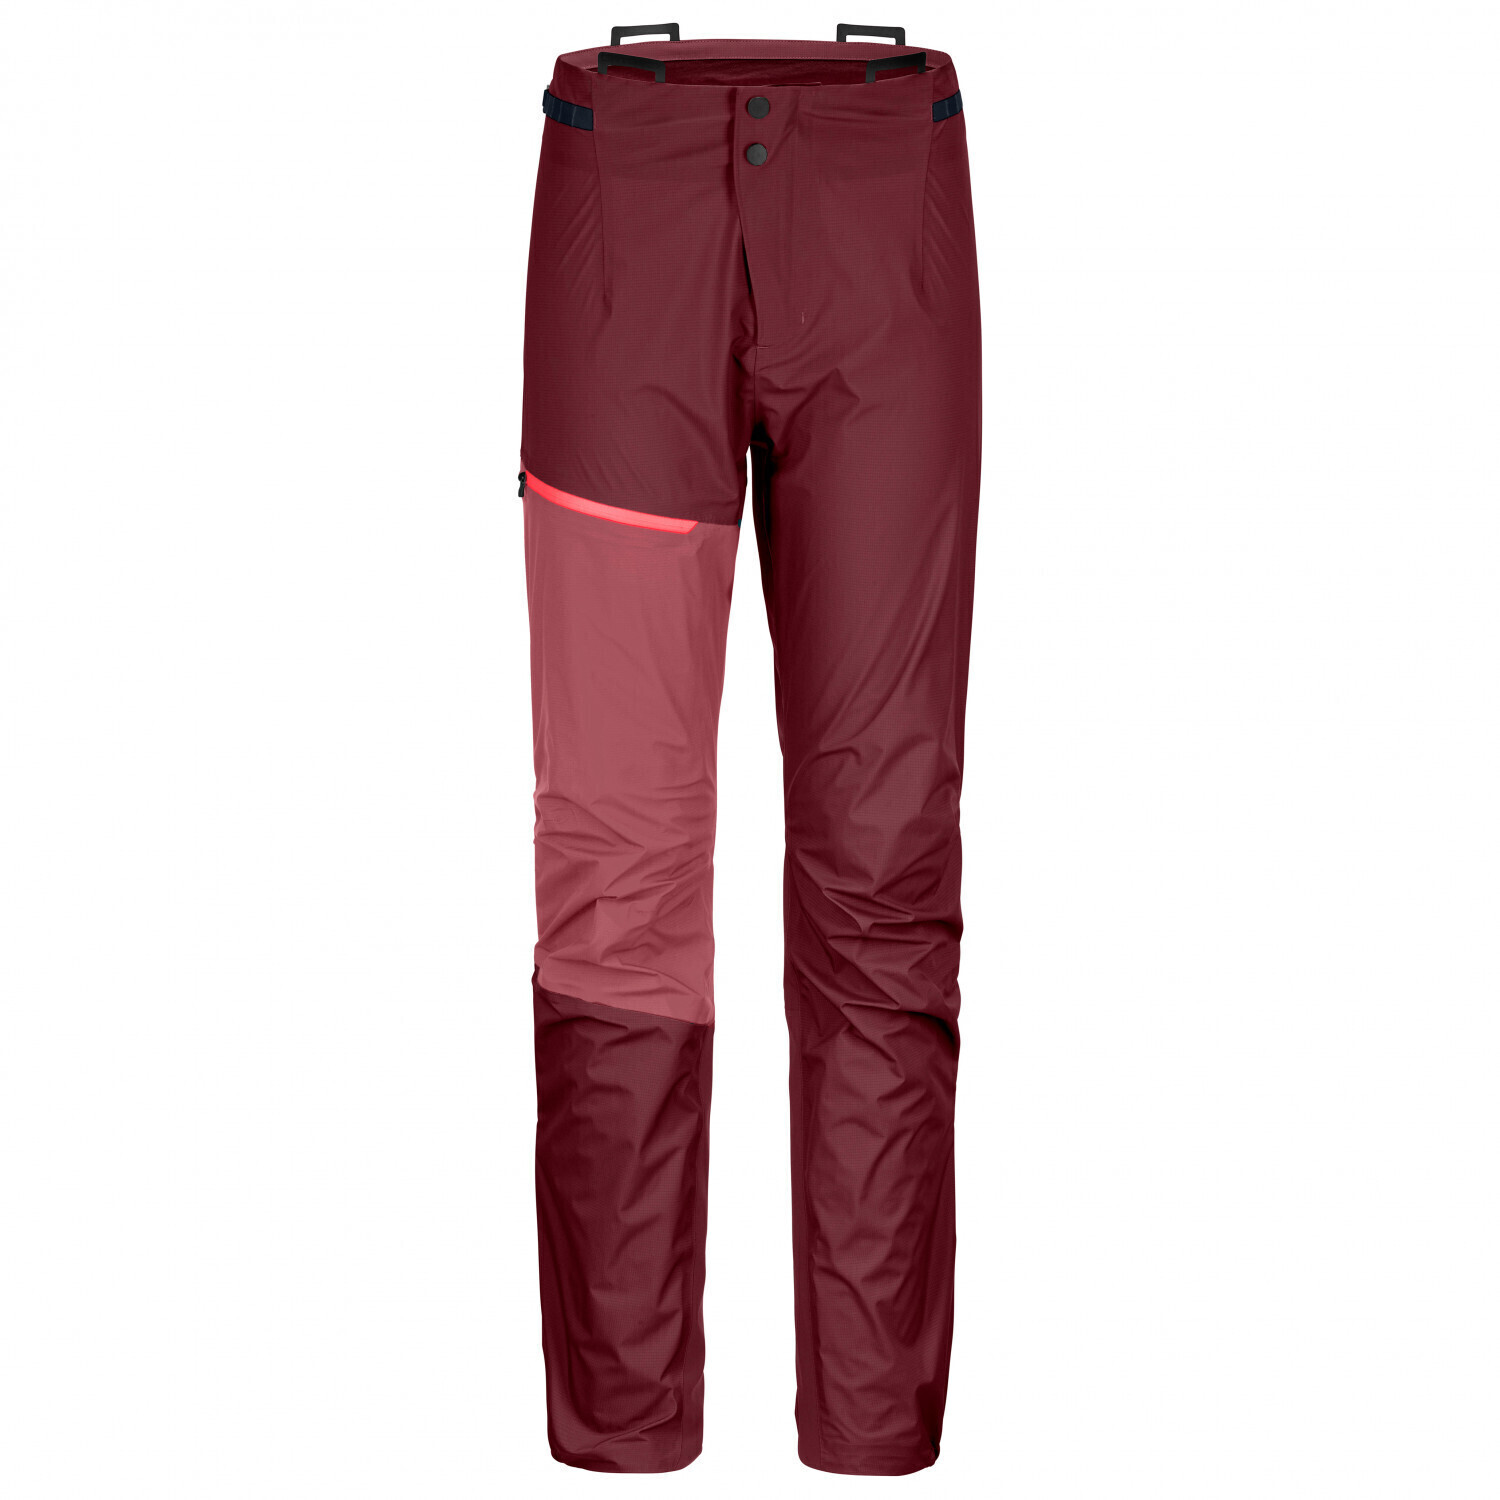 Patagonia Torrentshell 3L Pants - Pantaloni impermeabili - Donna